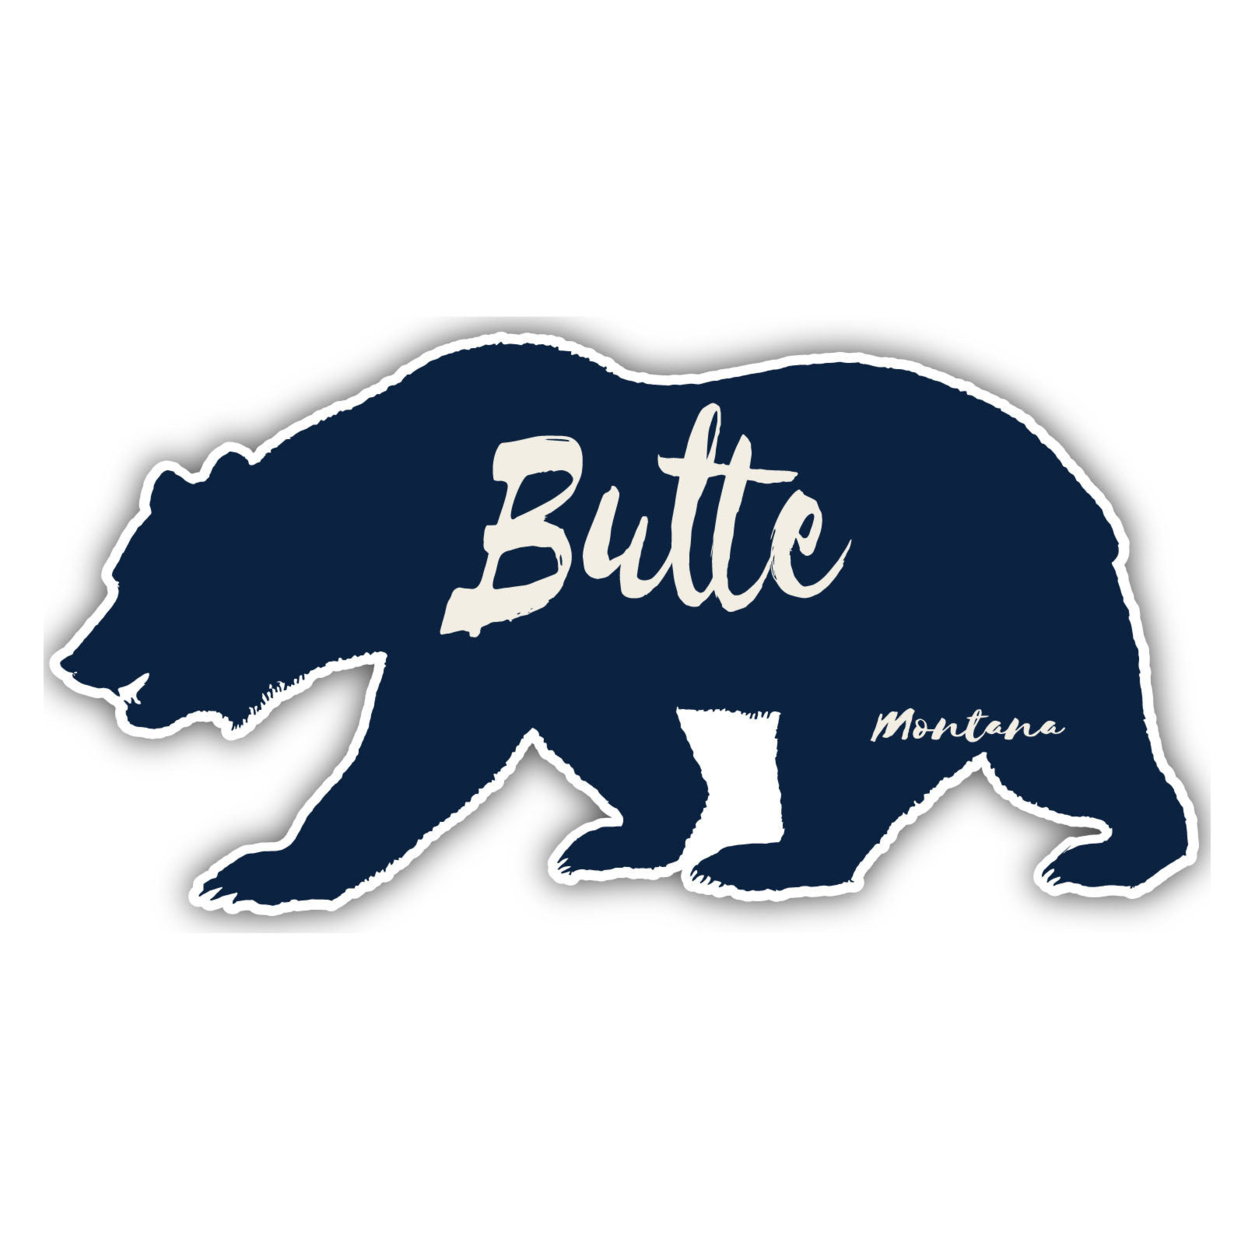 Butte Montana Souvenir Decorative Stickers (Choose Theme And Size) - Single Unit, 4-Inch, Tent